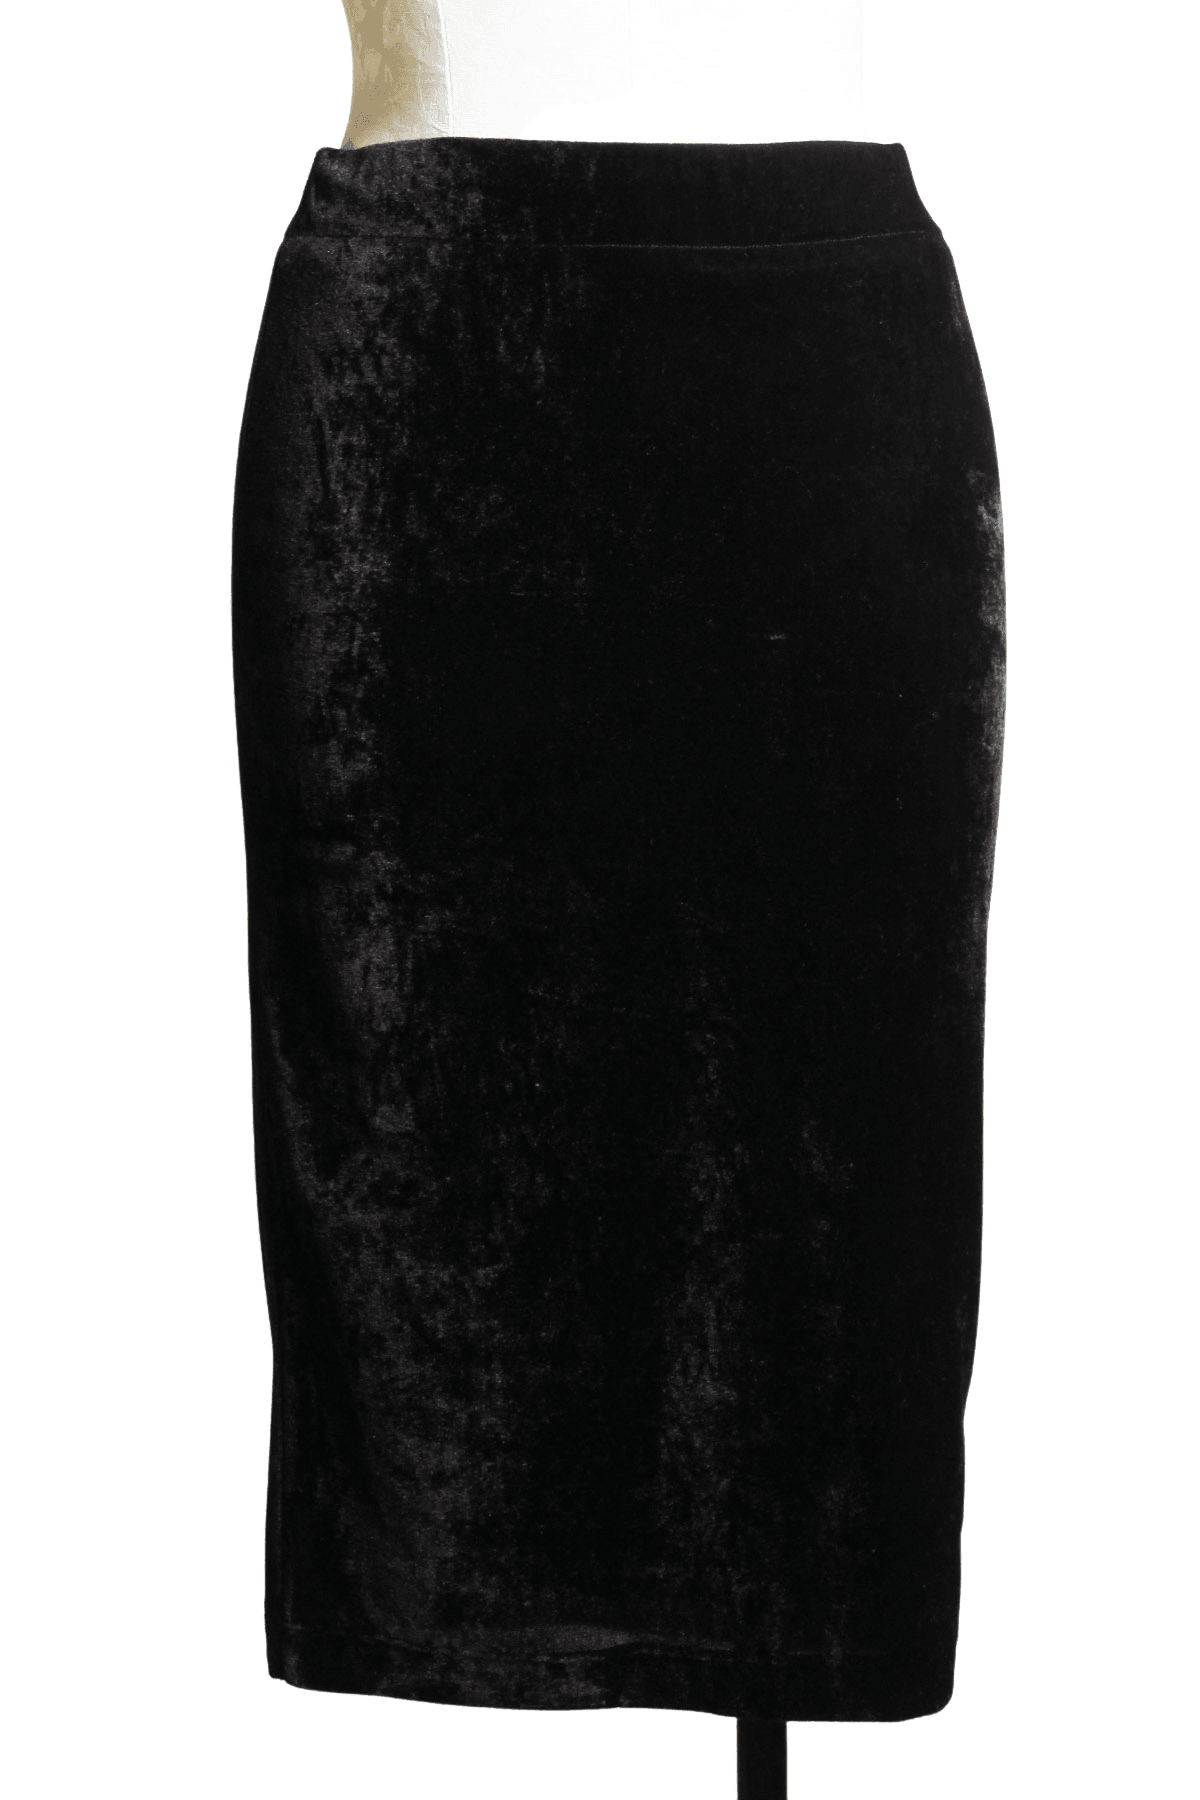 Black velour, fully lined knee length pencil skirt 